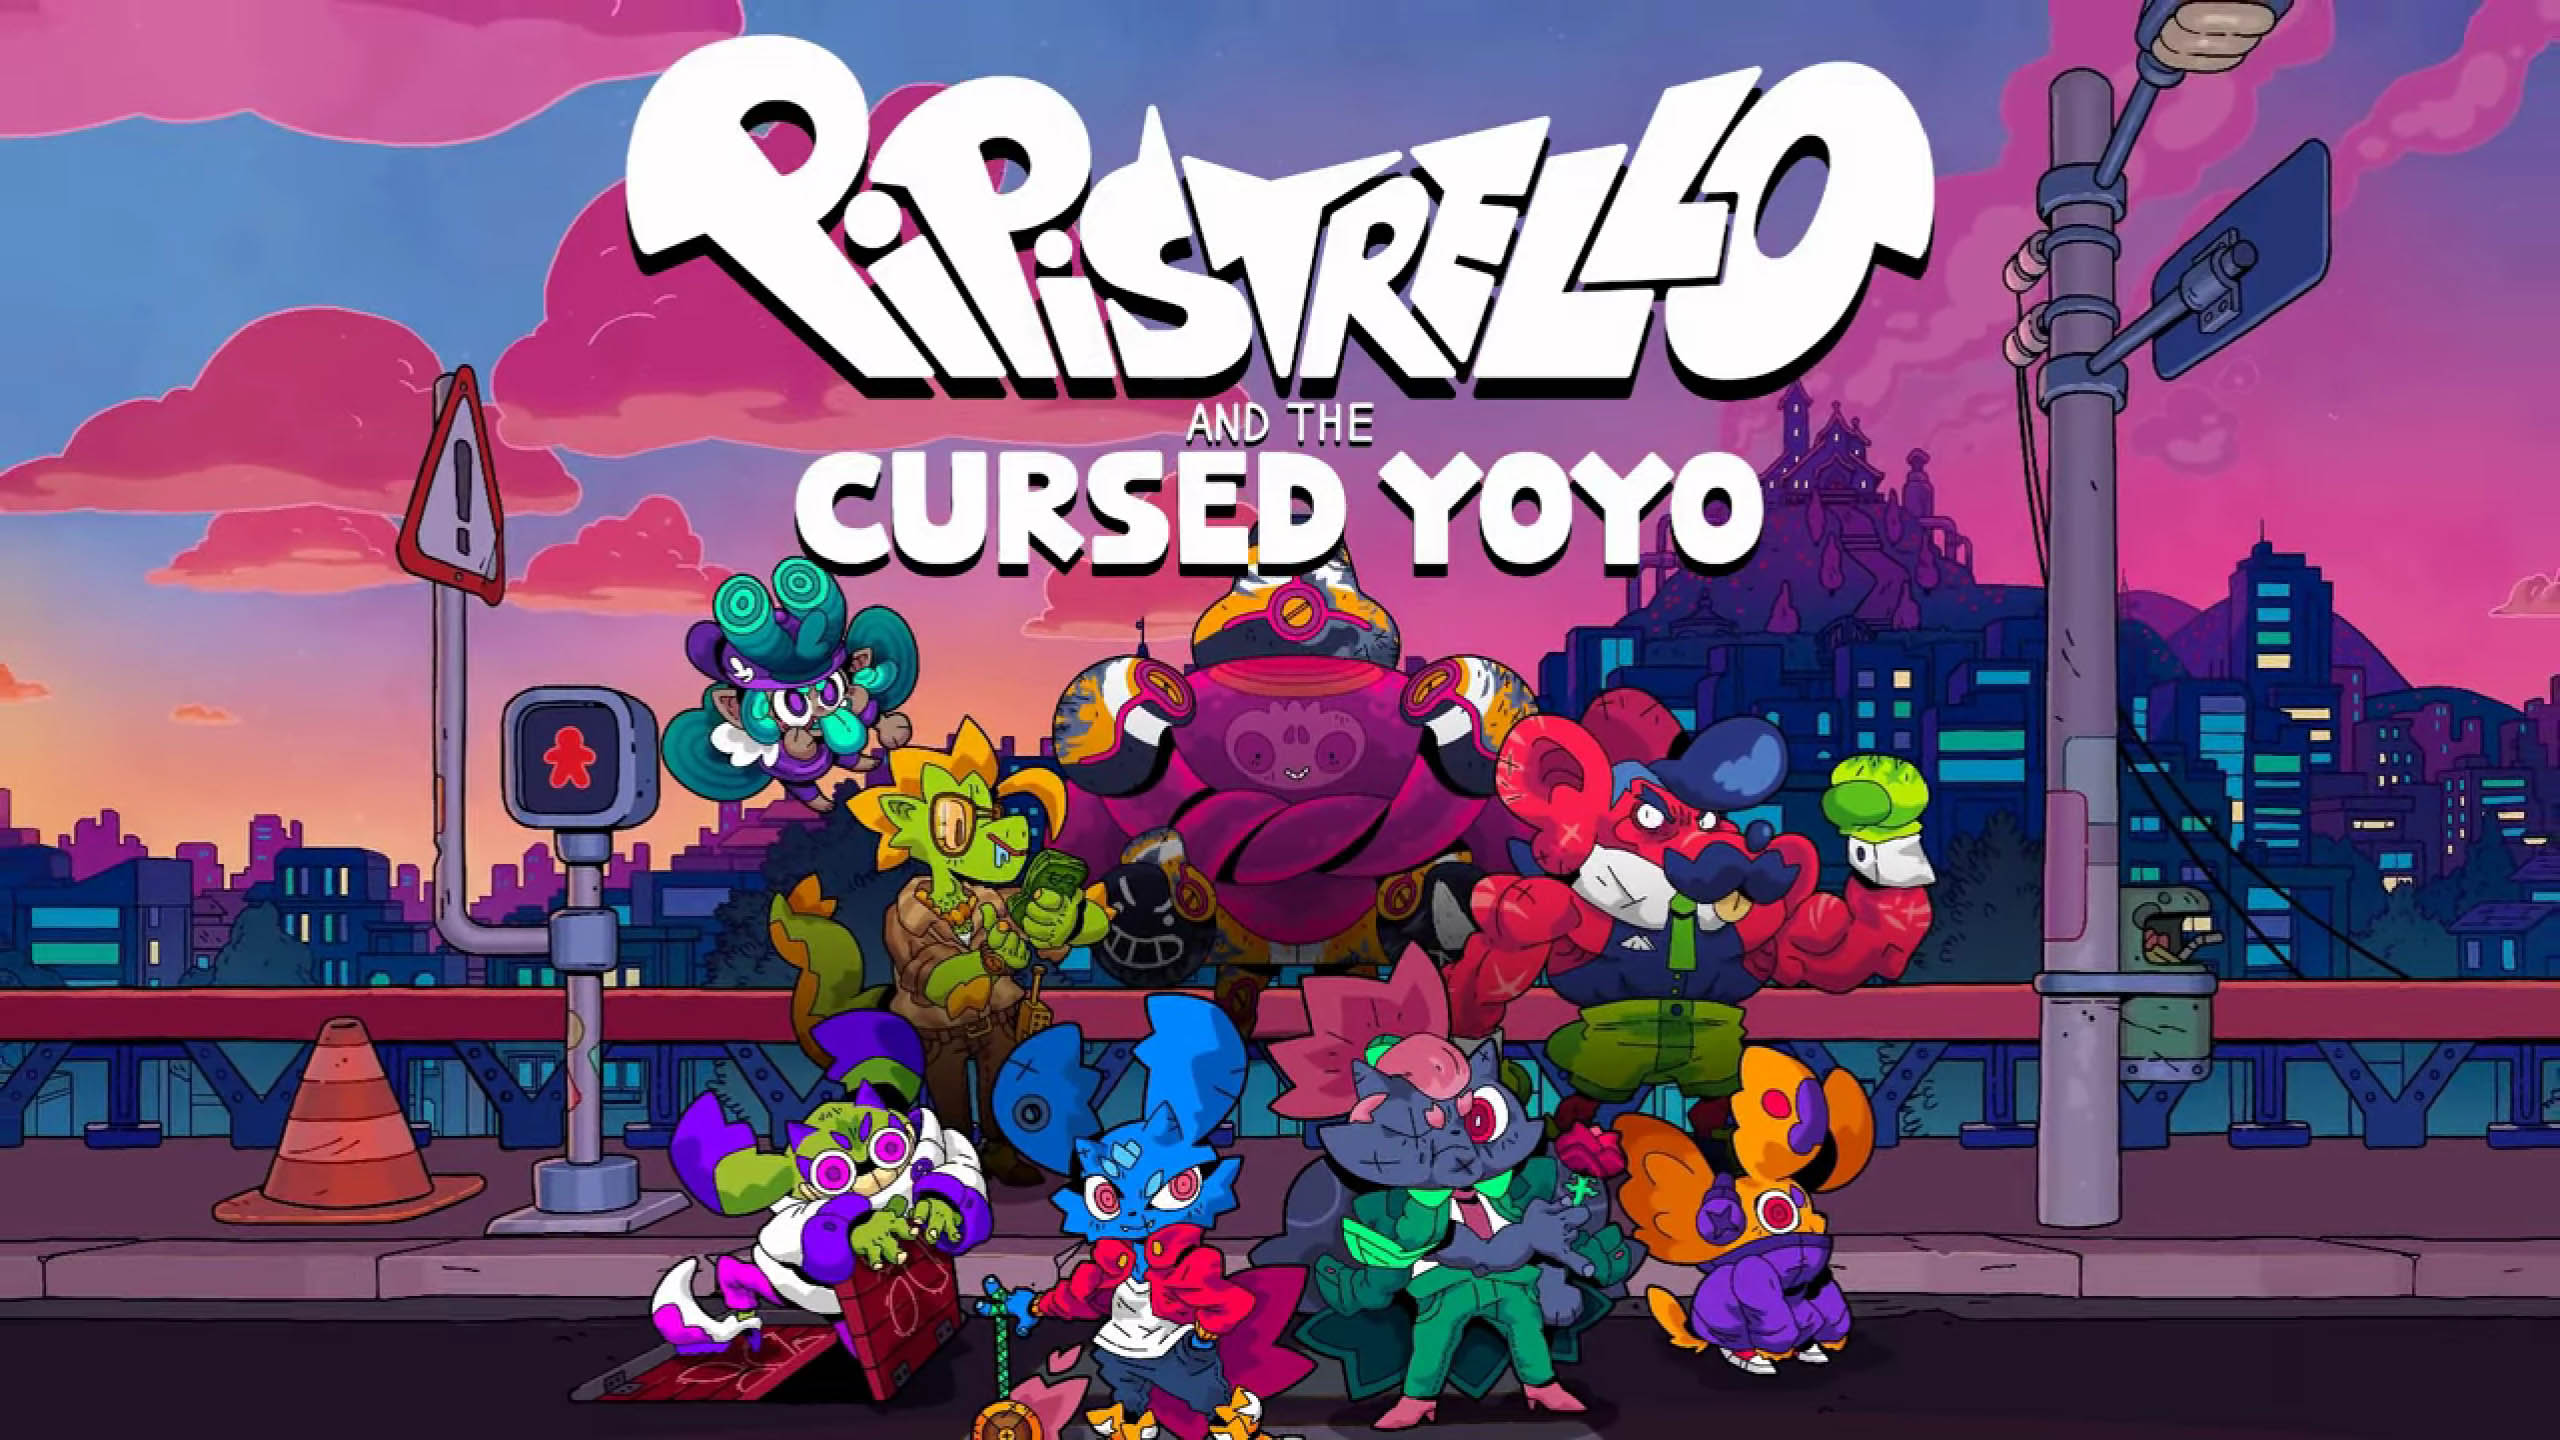 Pipistrello and the Cursed Yoyo